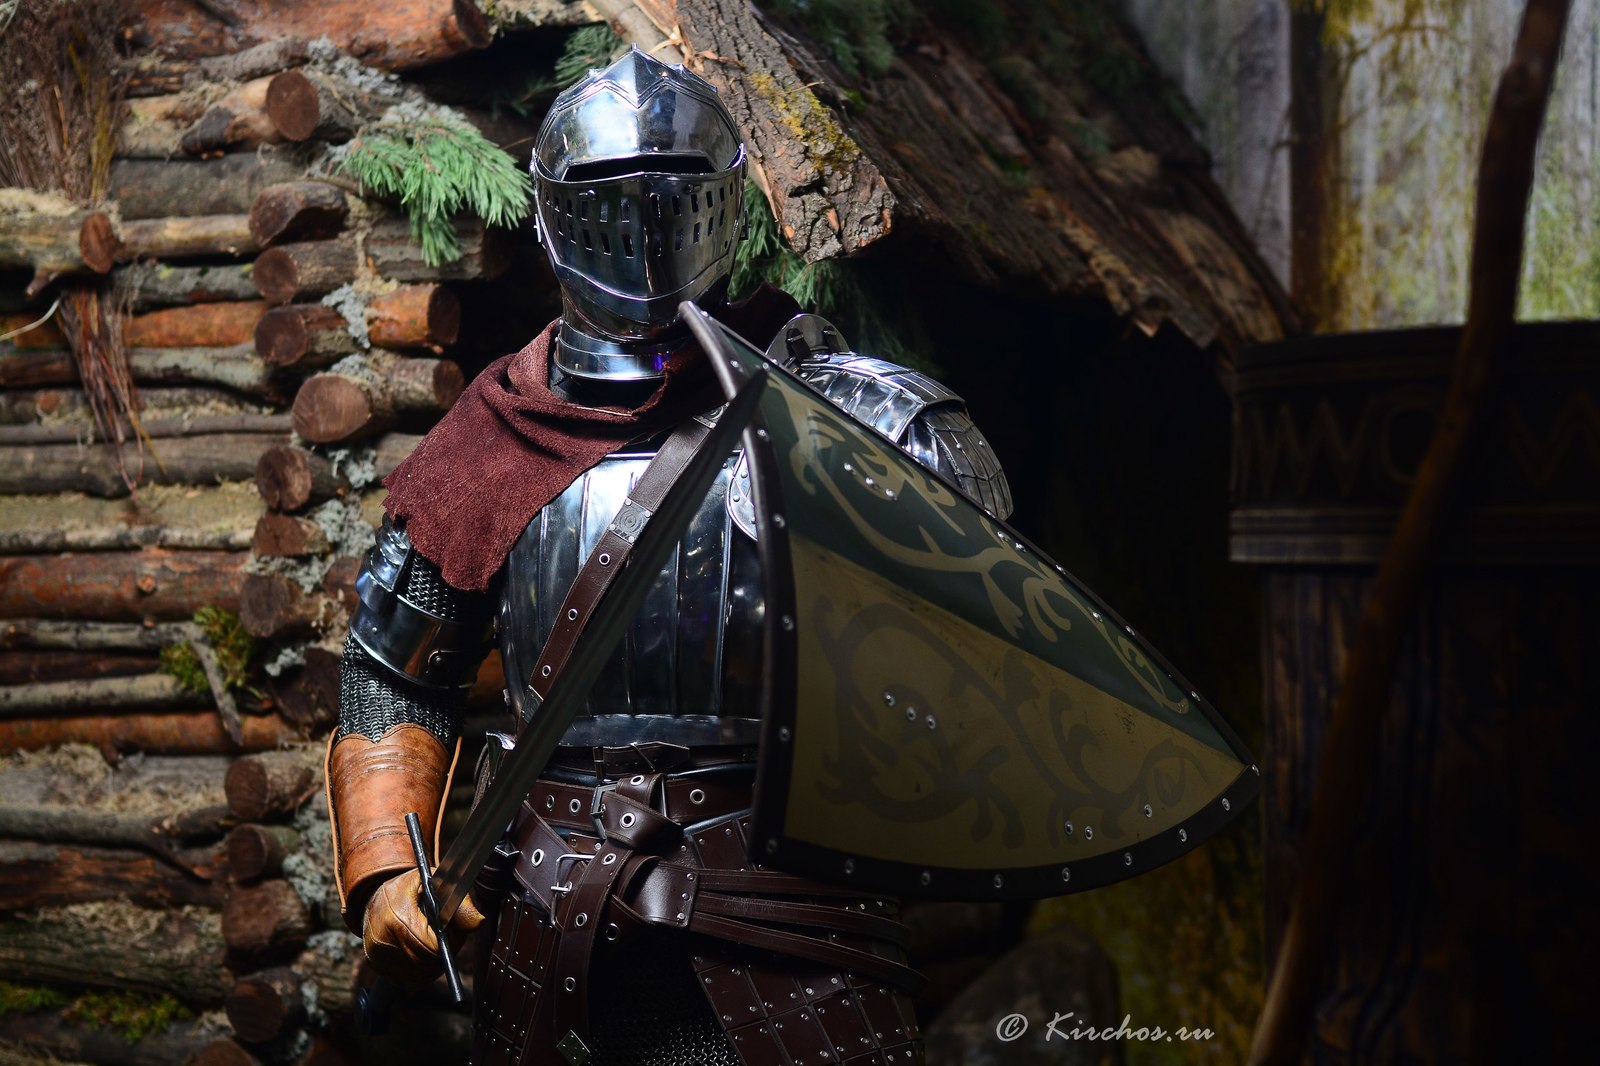 Knight armor from Dark Souls - Dark souls, Games, Cosplay, Knight, Armor, Longpost, Knights